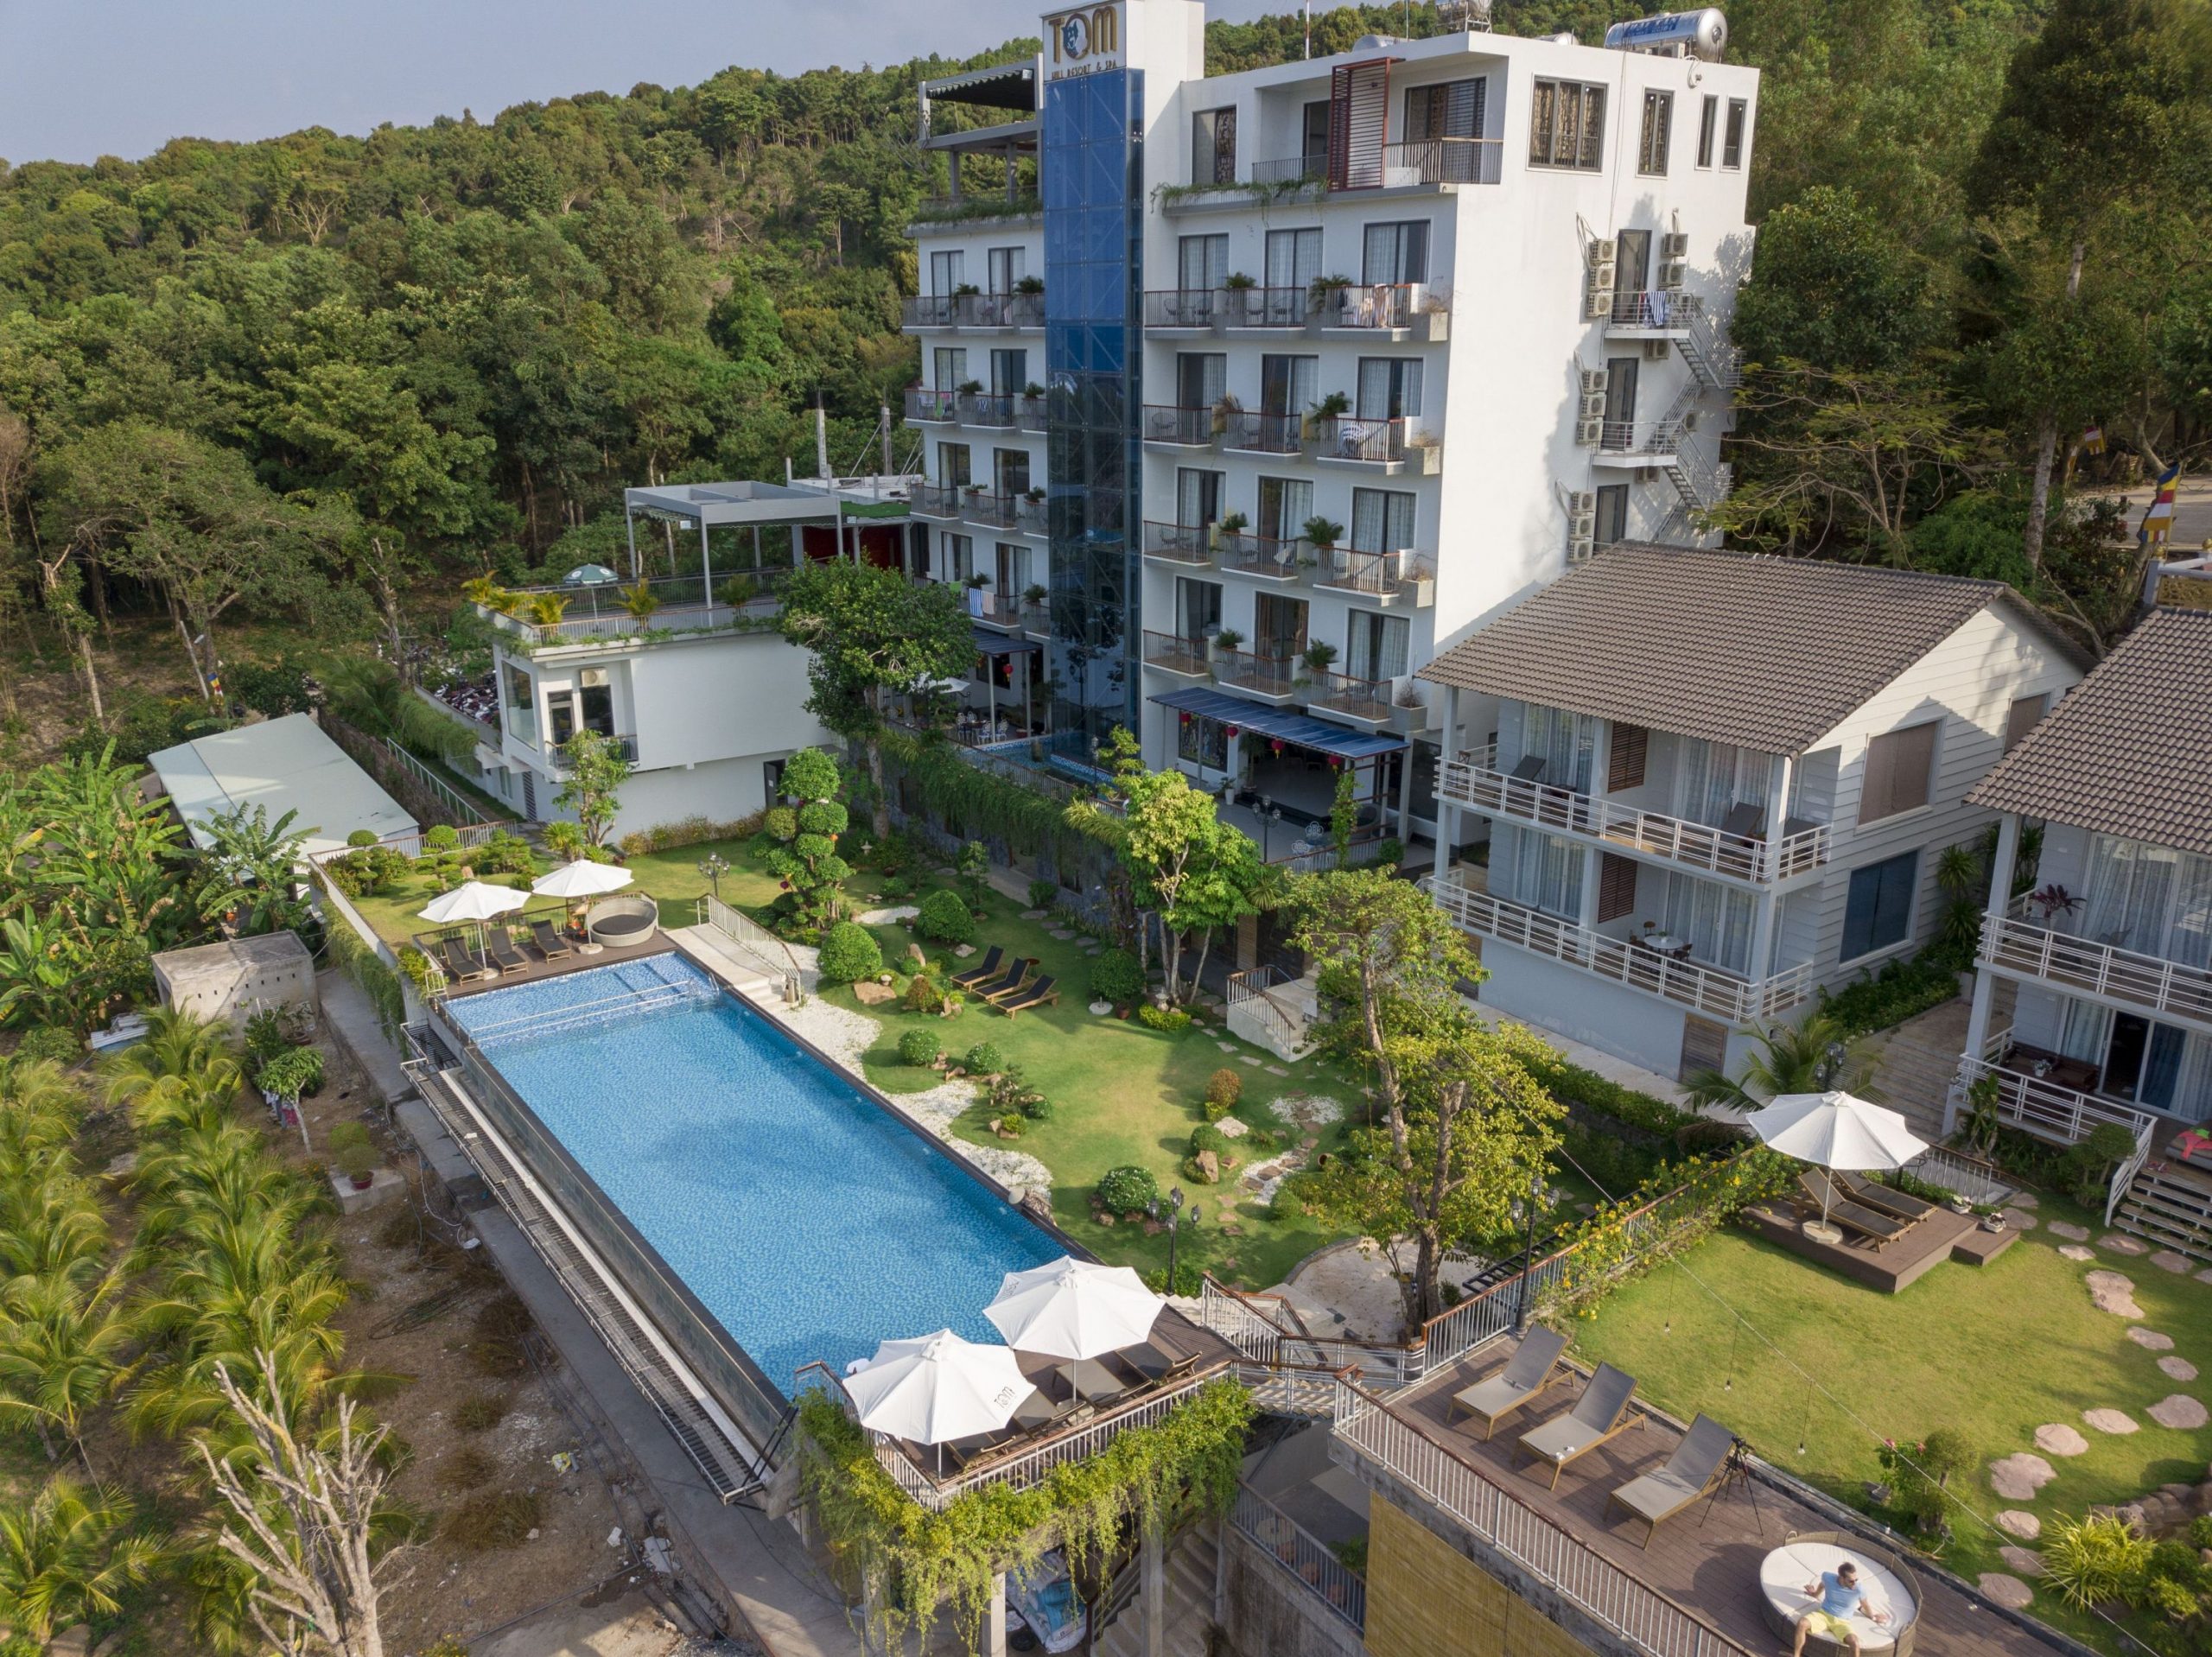 Hà Nội – Phú Quốc tại Tom Hill Resort & Spa tiêu chuẩn 3 sao (30/4 – 1/5)